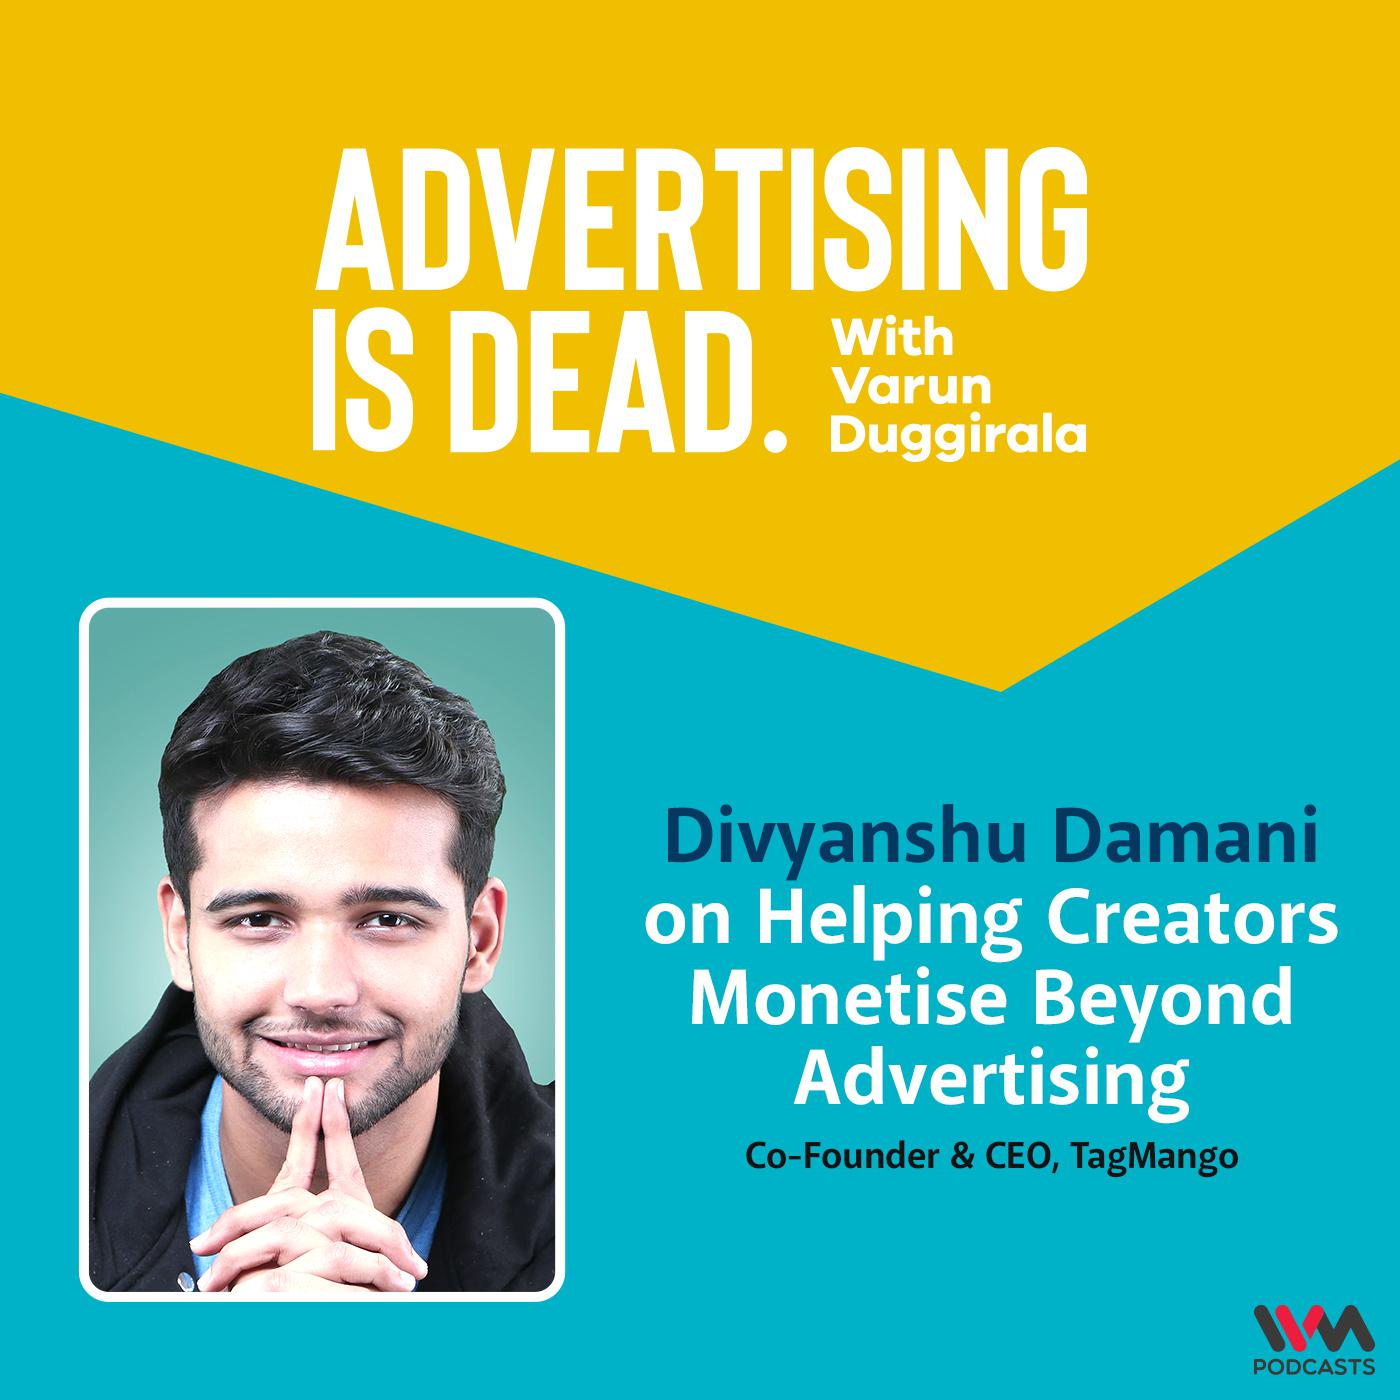 Divyanshu Damani on Helping Creators Monetise Beyond Advertising